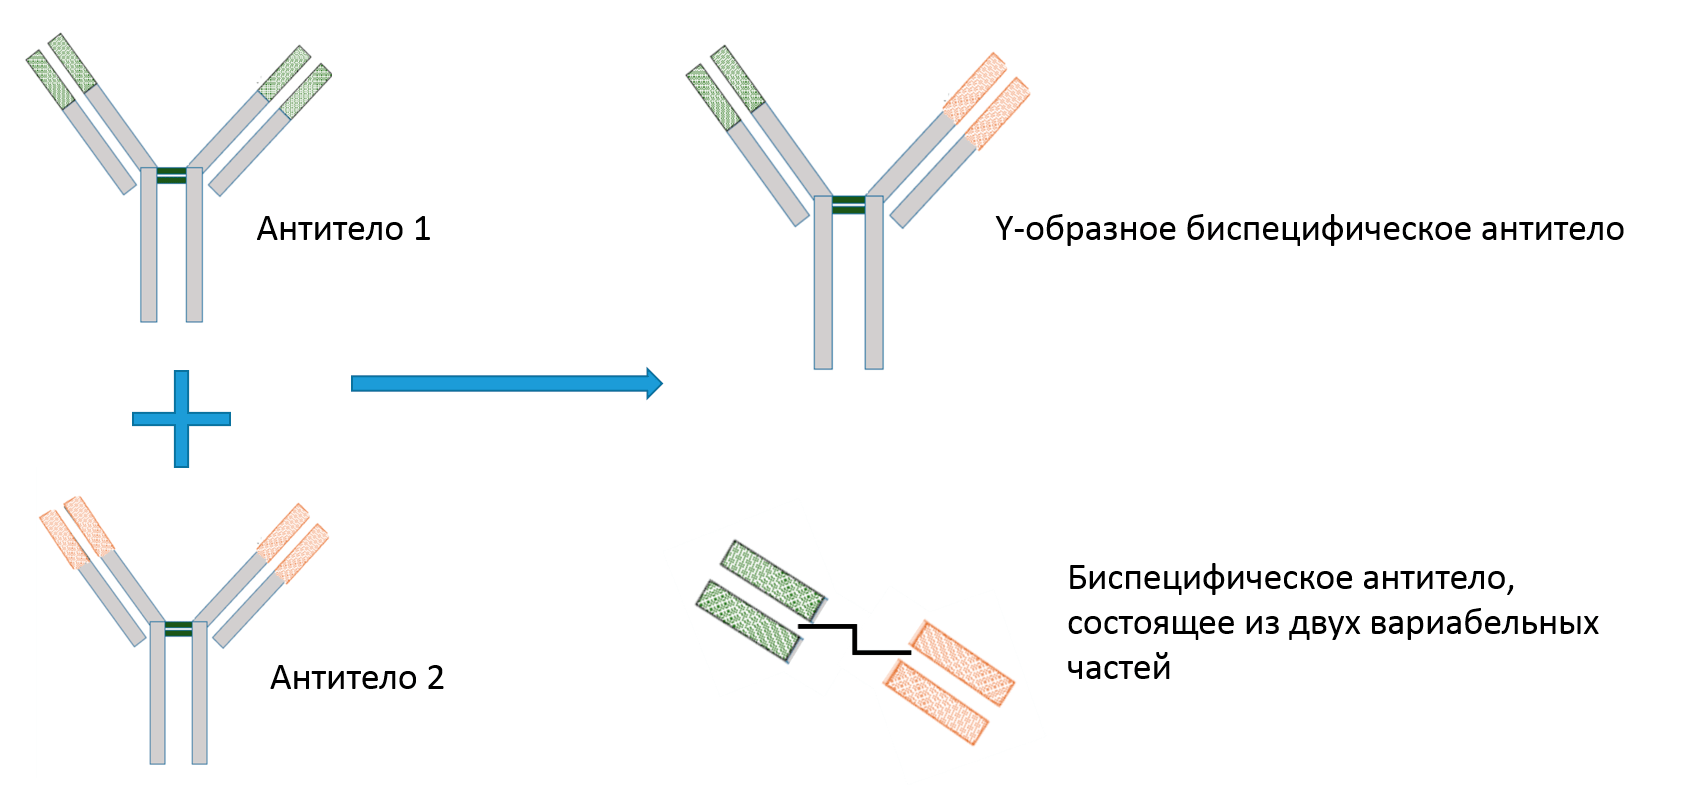 Два типа биспецифических антител